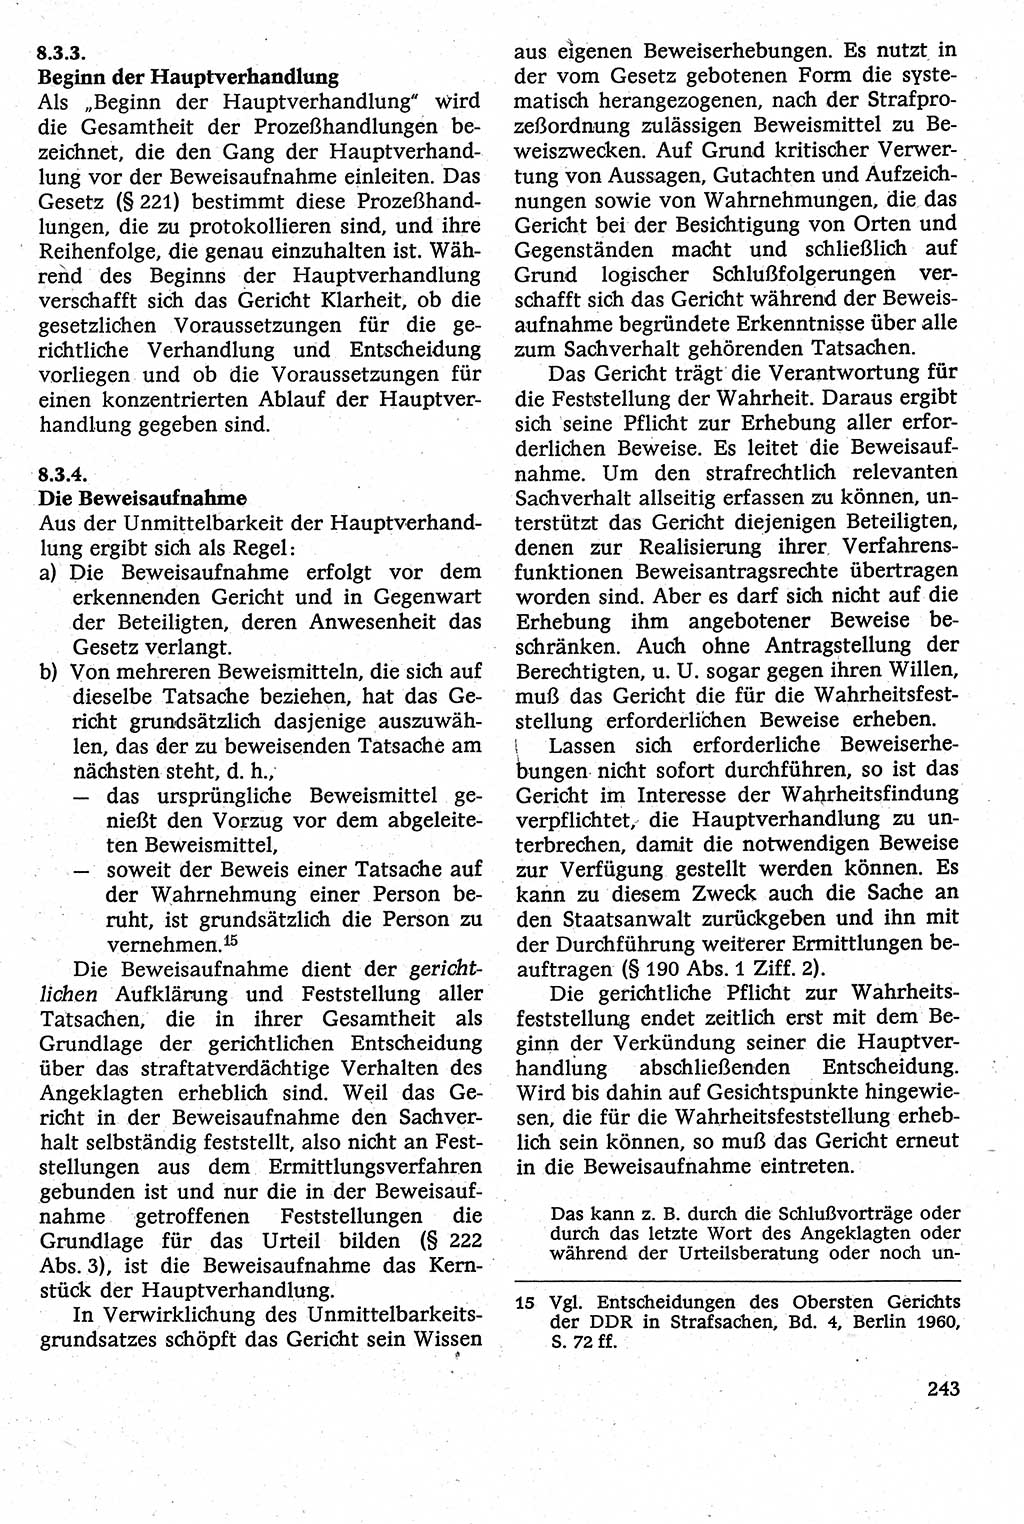 Strafverfahrensrecht [Deutsche Demokratische Republik (DDR)], Lehrbuch 1982, Seite 243 (Strafverf.-R. DDR Lb. 1982, S. 243)